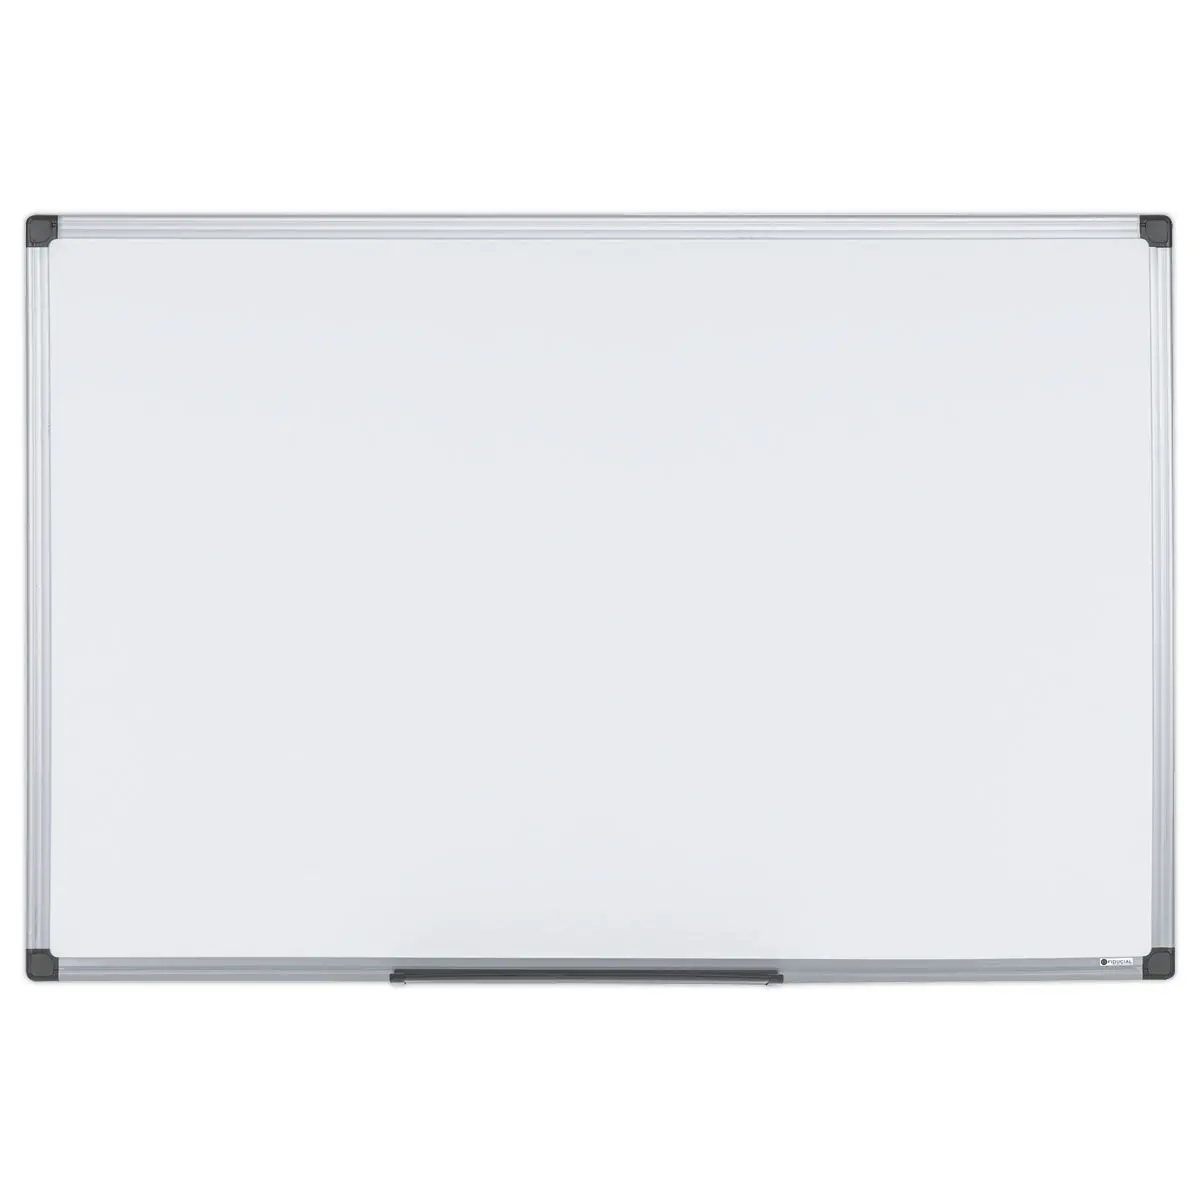 Tableau blanc laqué avec cadre PVC - 90 x 120 cm photo du produit